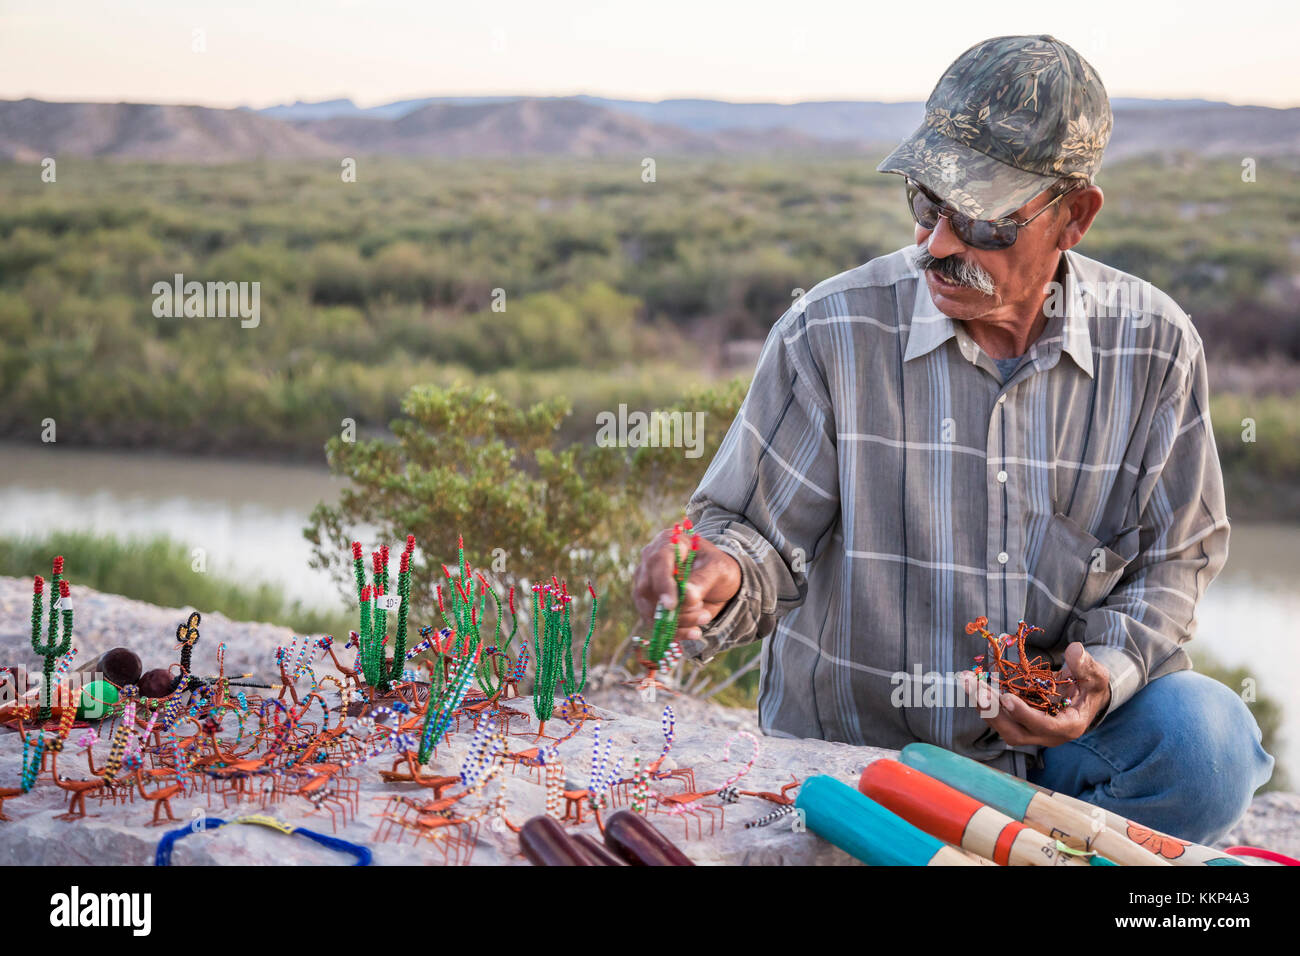 El parque nacional de Big Bend, Texas - un hombre del pueblo mexicano de boquillas del carmen sale de la artesanía en un mirador sobre el río grande para t Foto de stock